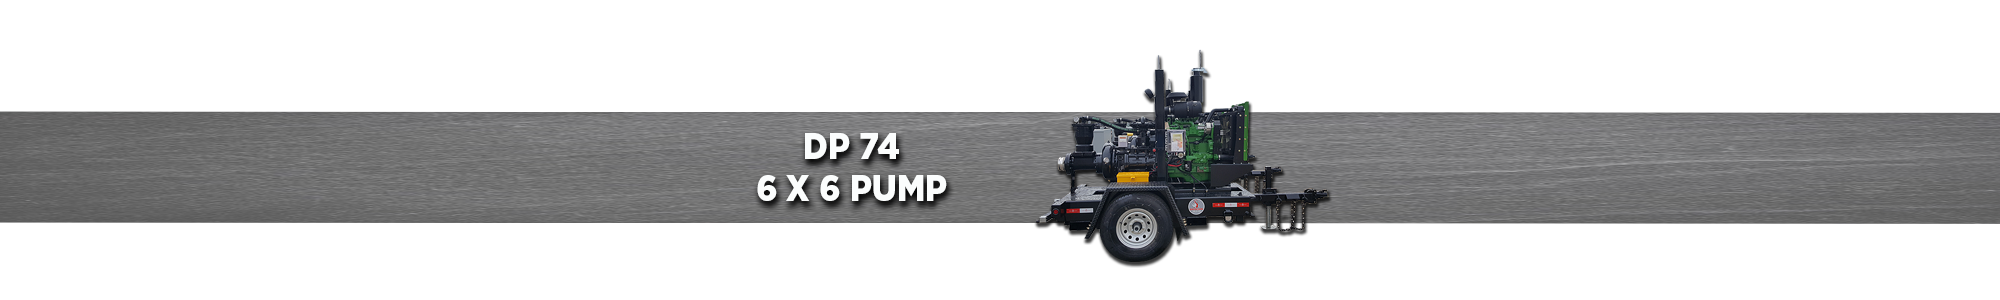 DP74 6x6 Pump